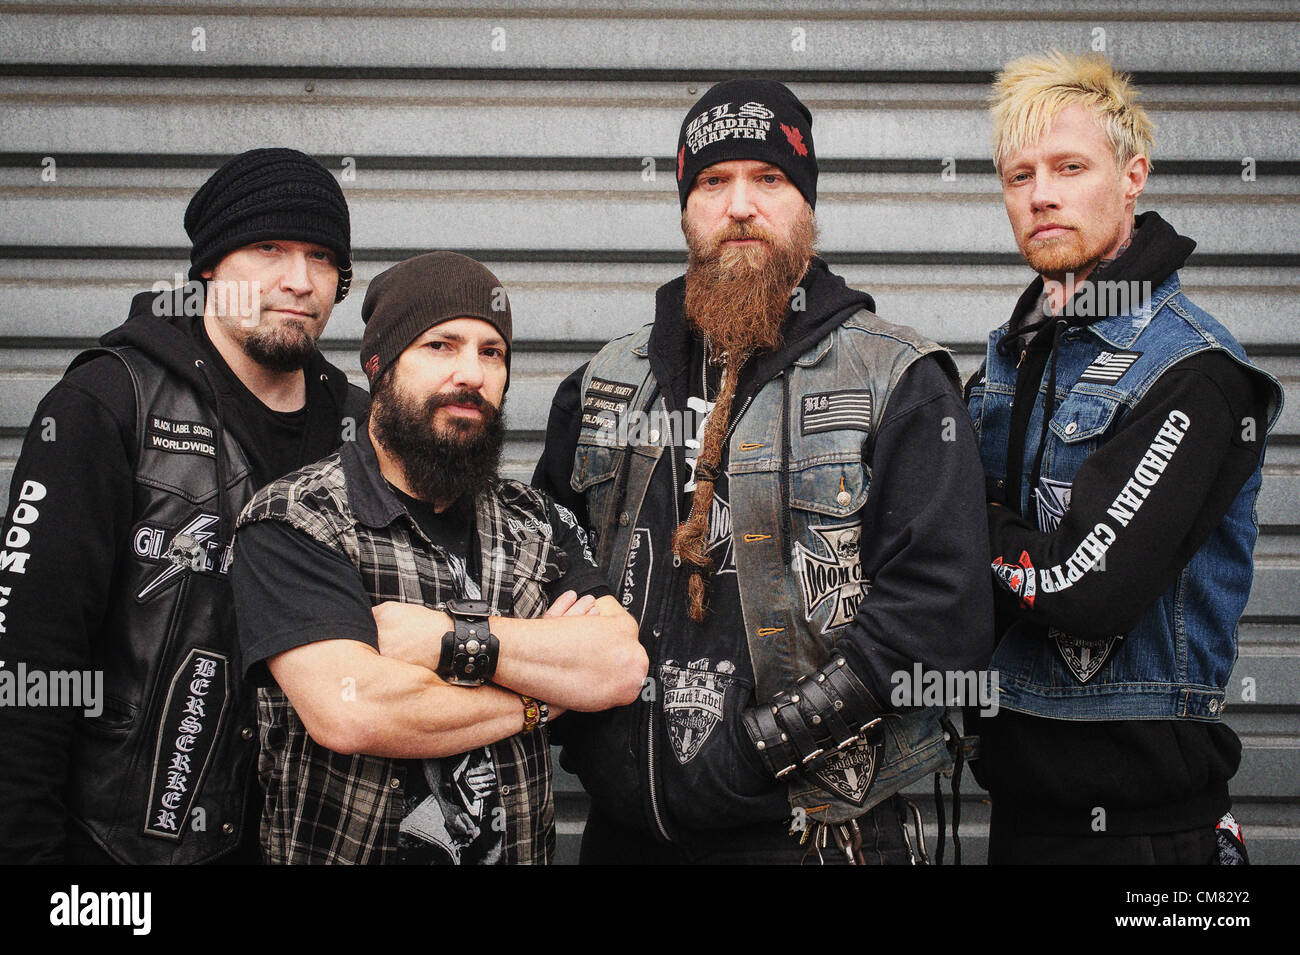 24 octobre 2012 - Toronto, Ontario, Canada - Membres du groupe de metal  Répetoires Black Label Society à l'extérieur de la discothèque Kool Haus à  Toronto. De gauche à droite - guitariste